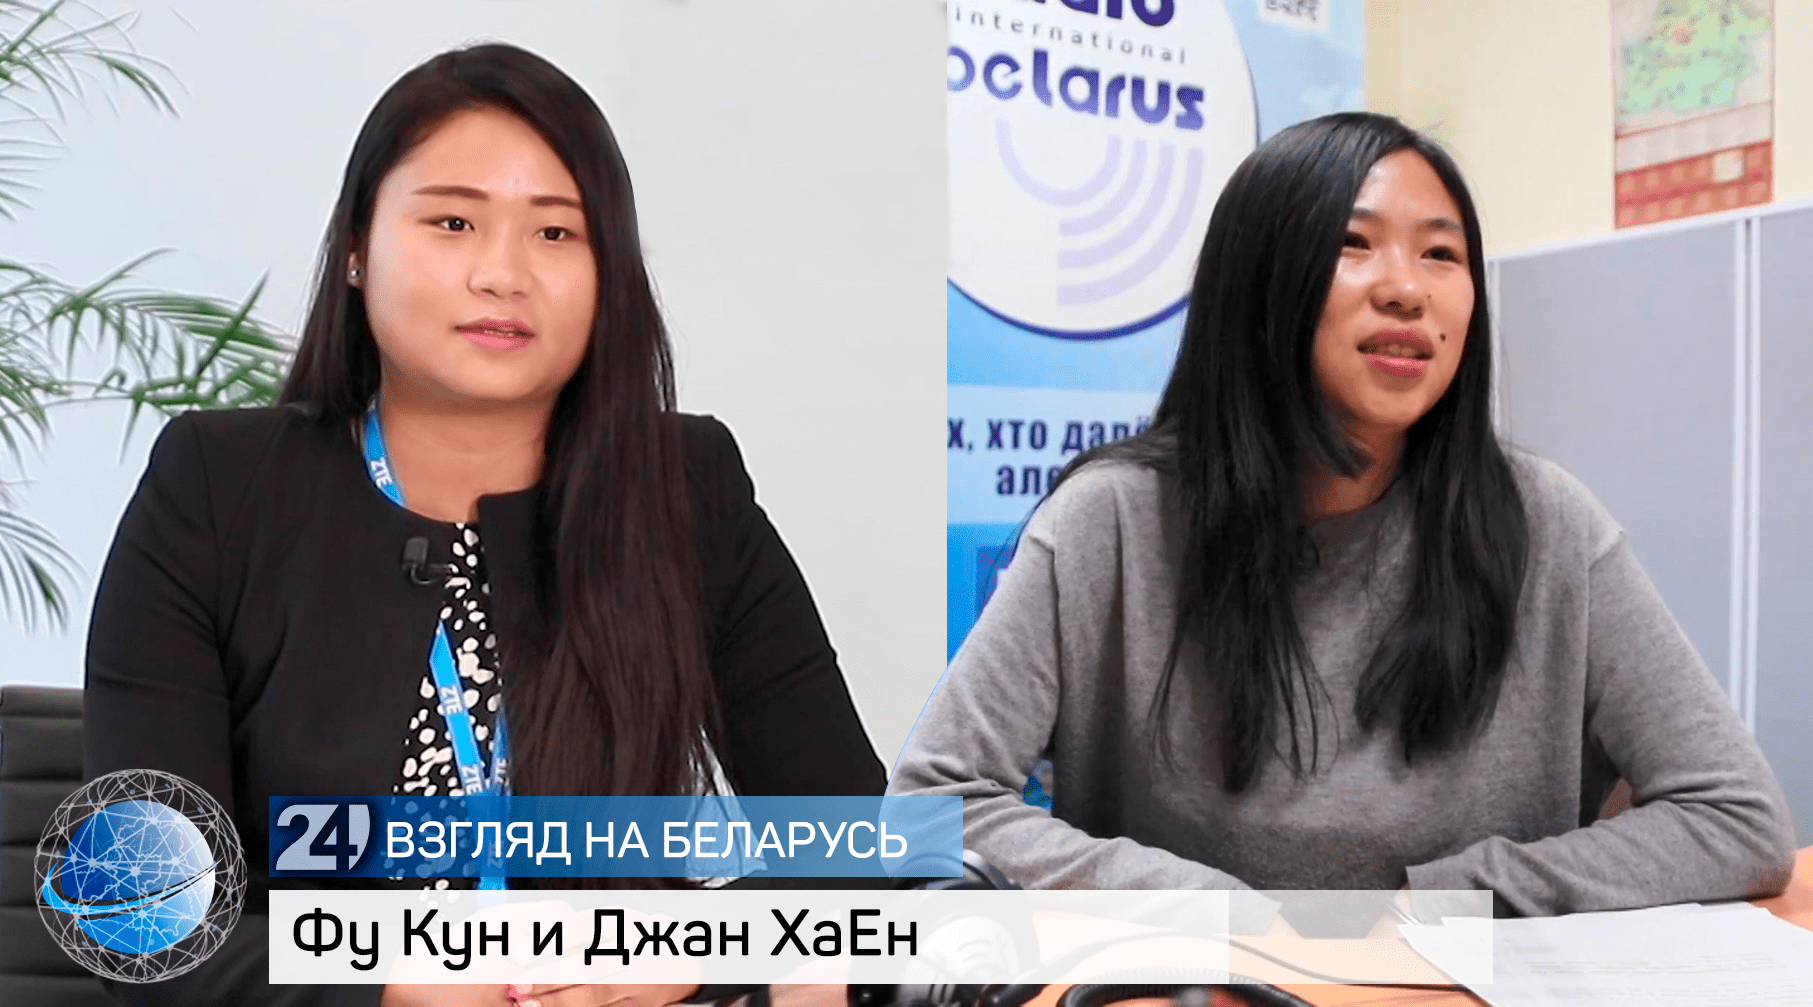 Девушки из Китая о жизни в Беларуси после окончания университета